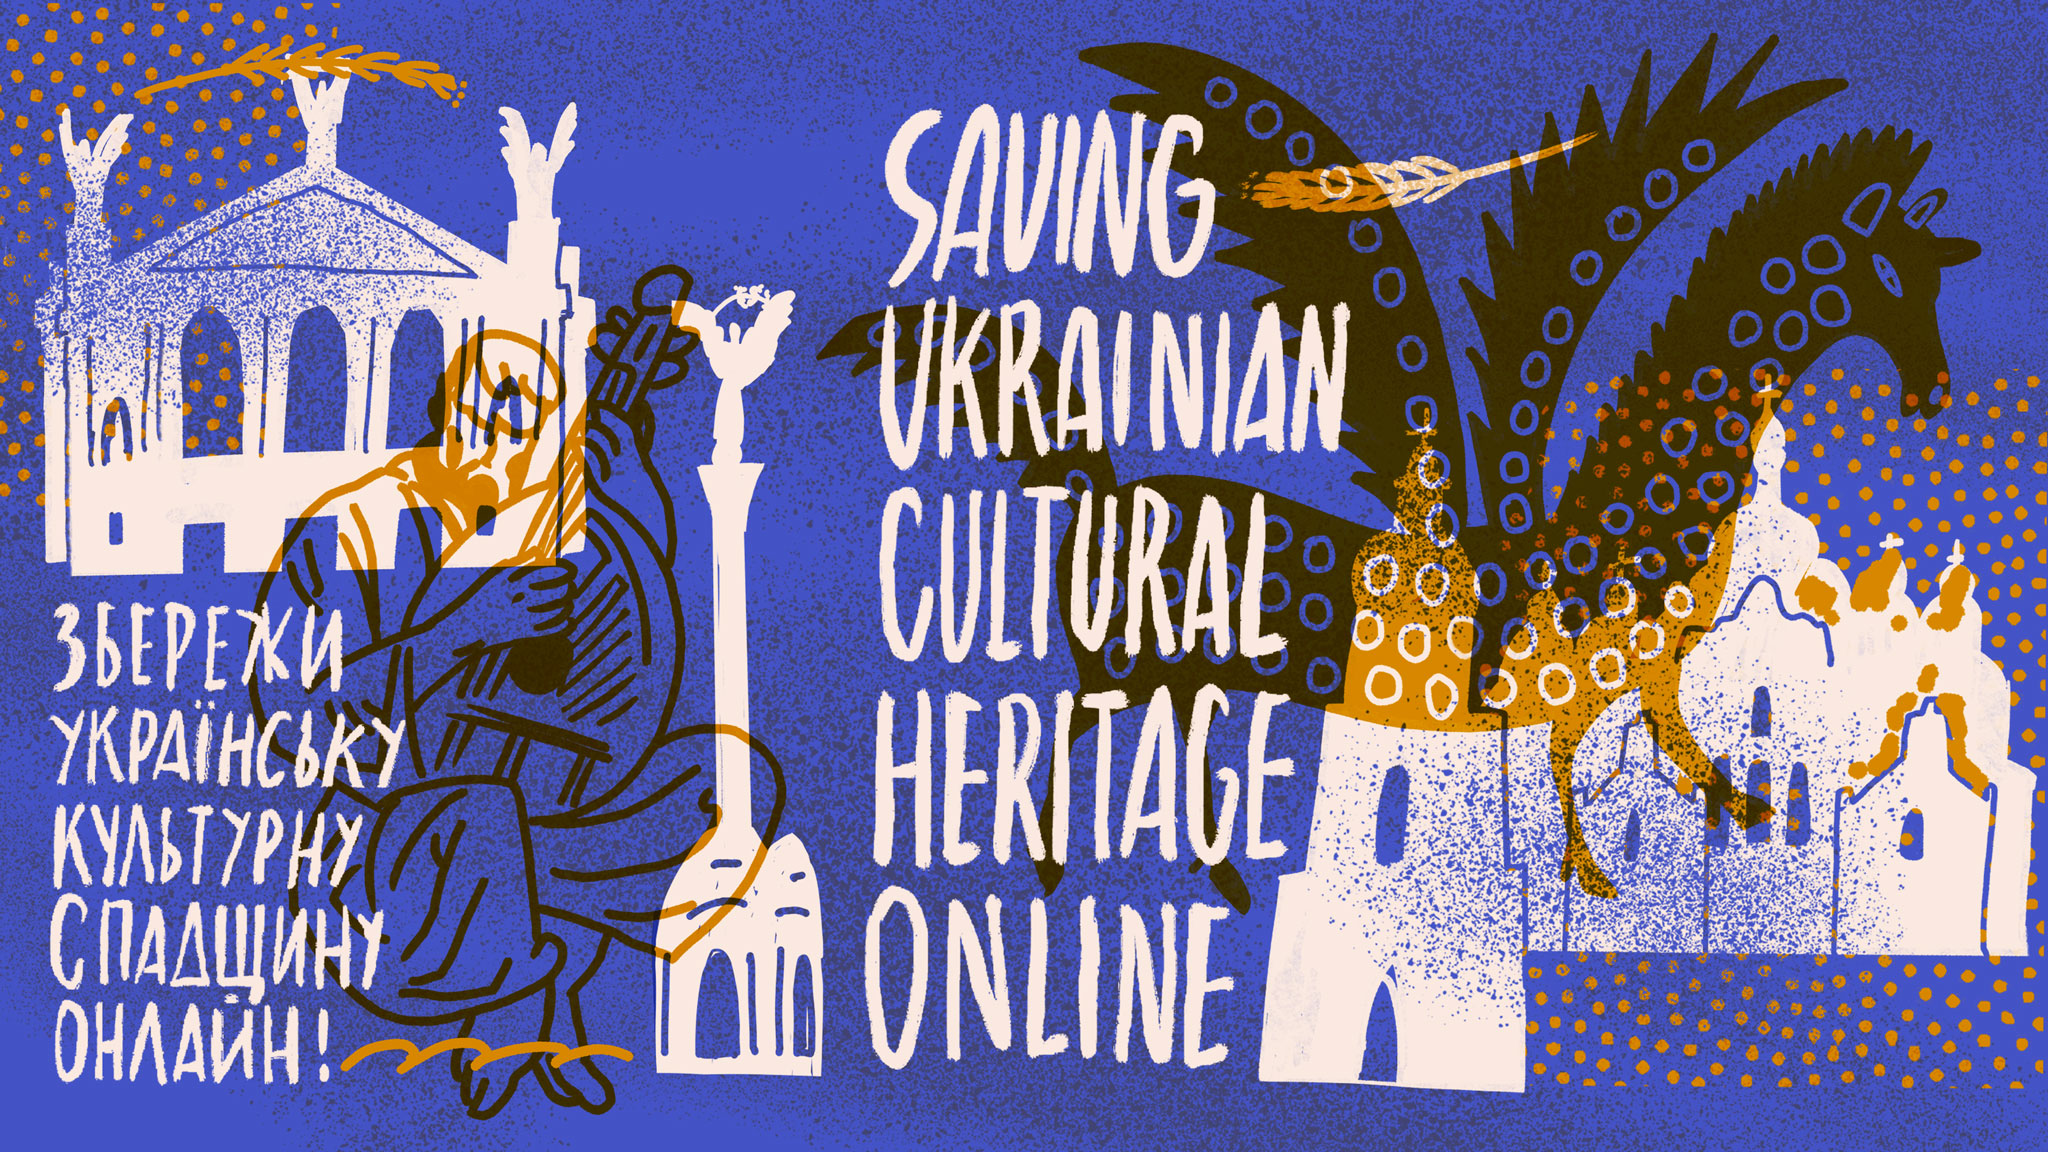 Illustration by Vlad Kholodnyi for "SUCHO – Saving Ukrainian Cultural Heritage Online"